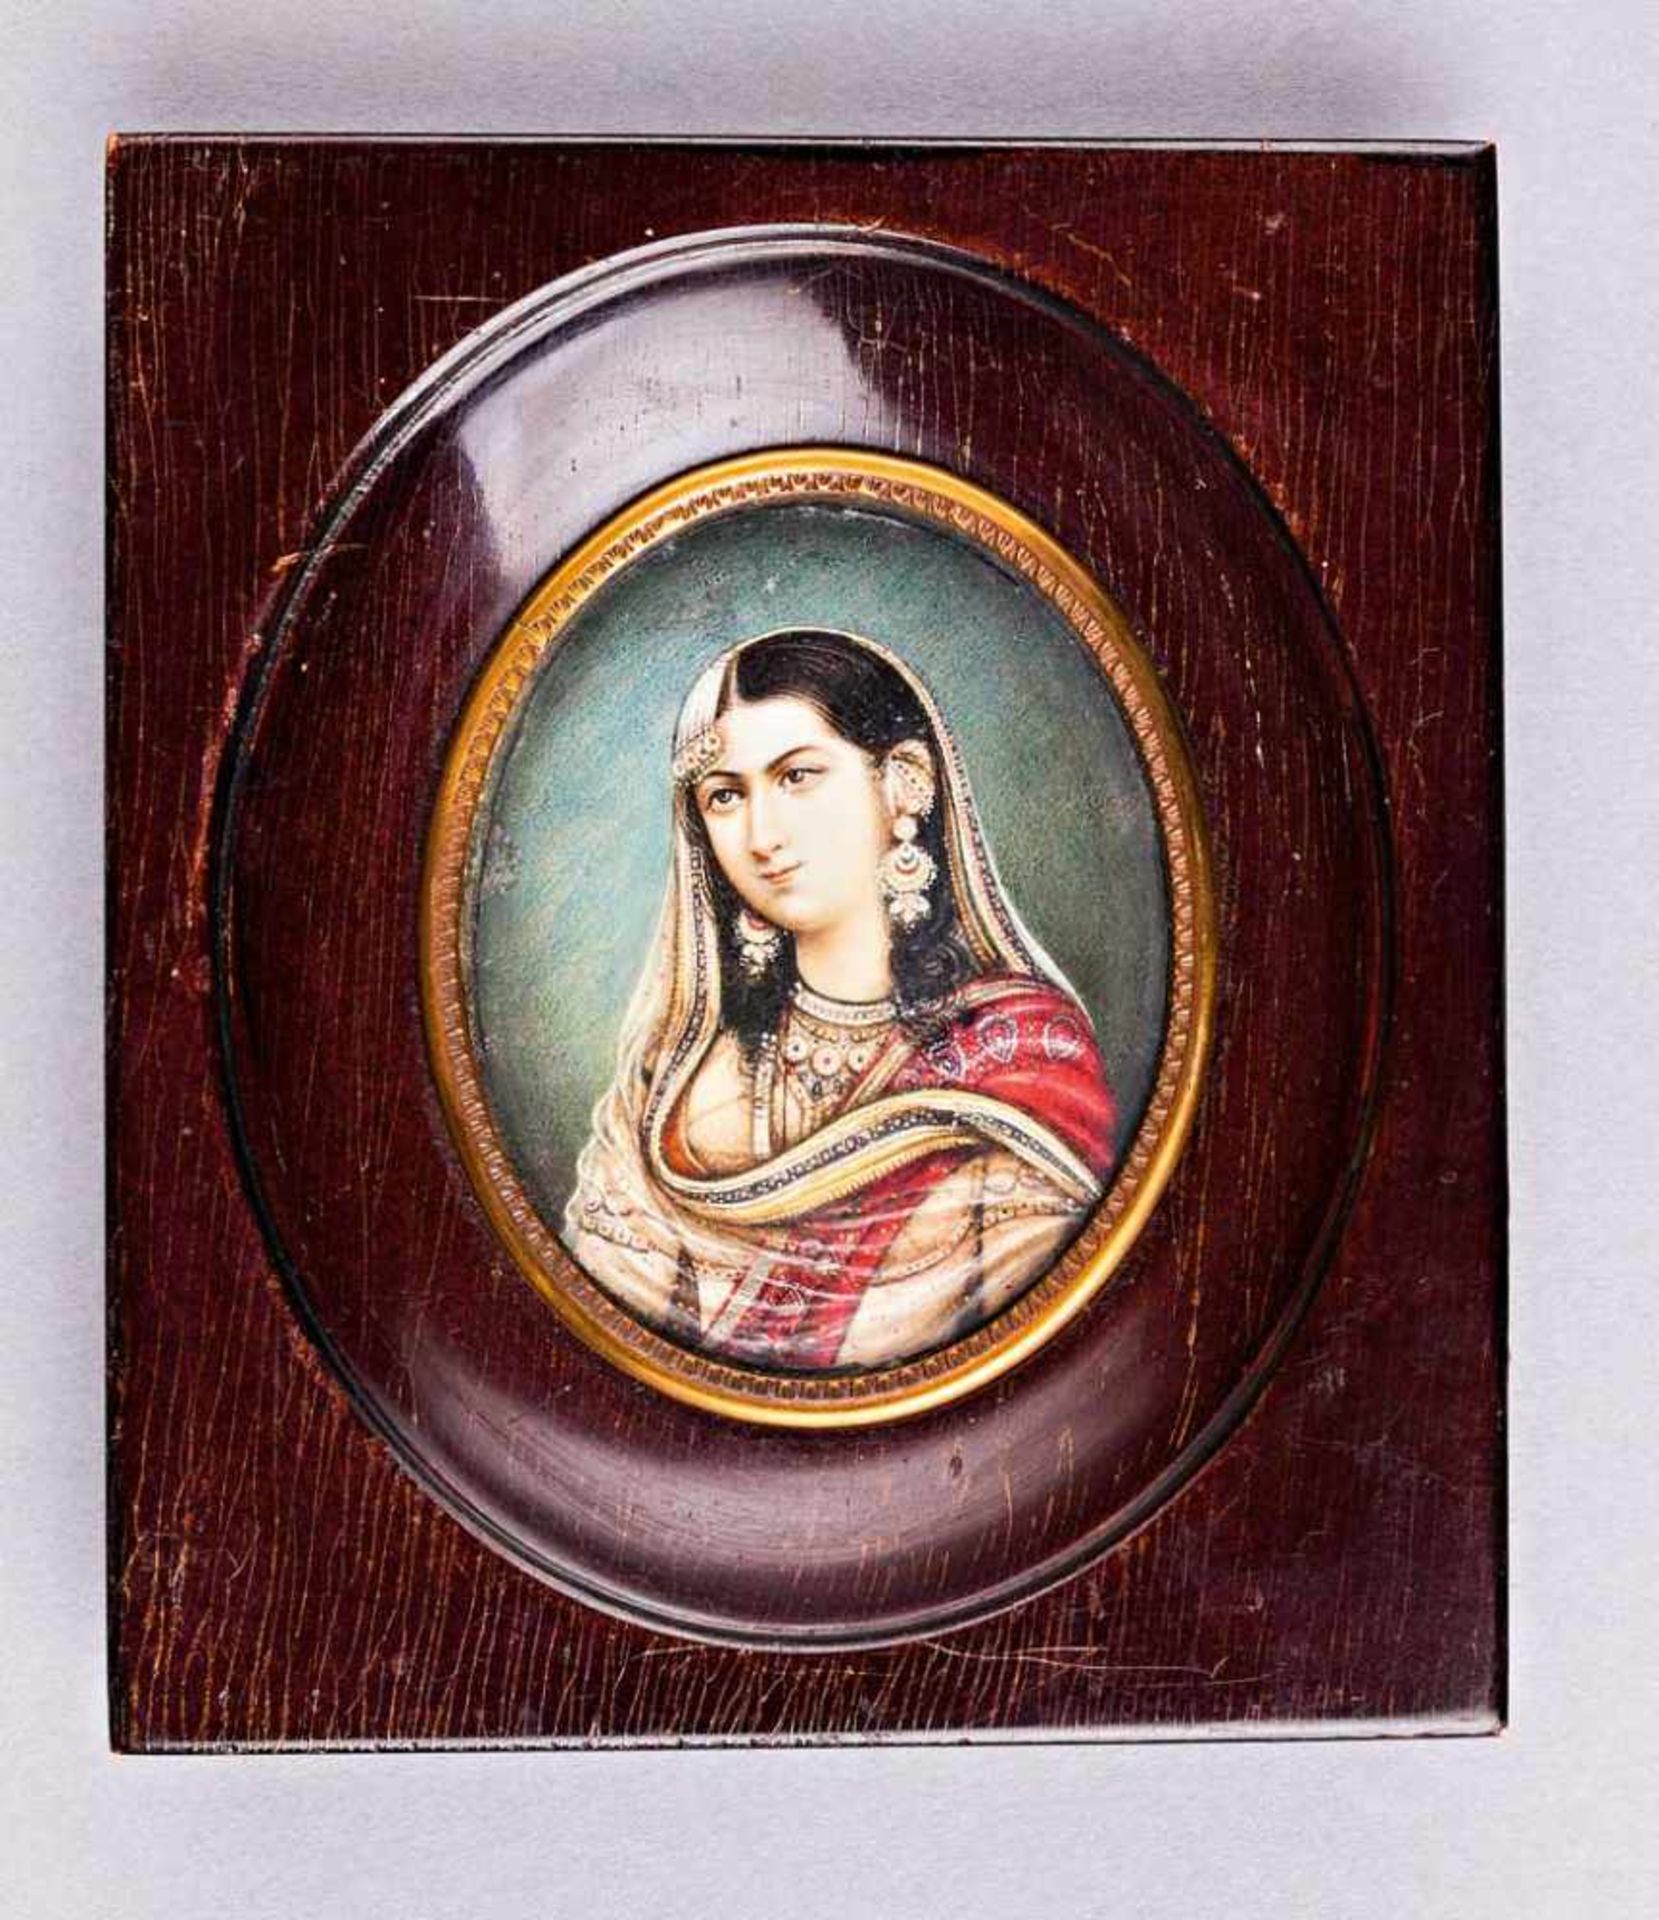 Portrait einer Inderin in Tracht. Auf Elfenbein. Mitte 19. Jh. Oval, 7,2 x 5,8 cm. R